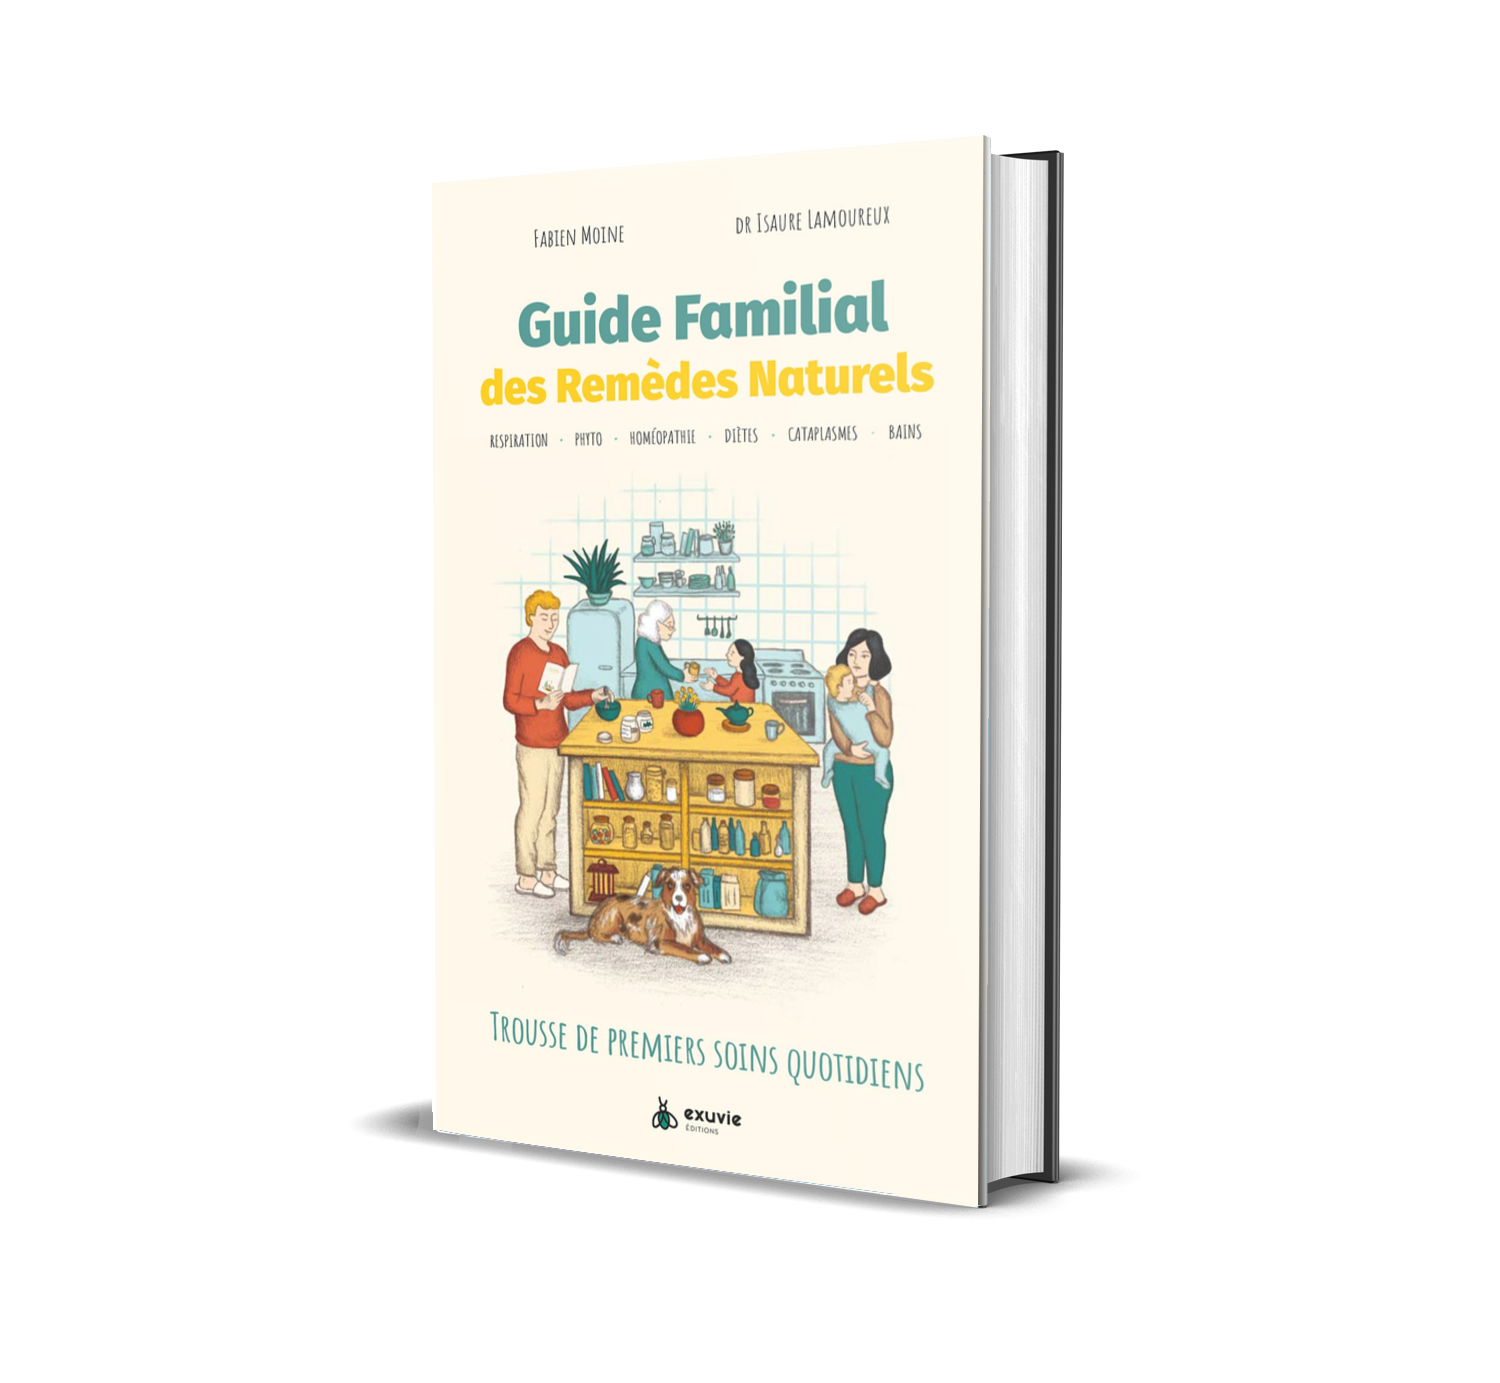 Couverture du livre "Guide familial des remèdes naturels" écrit par Fabien Moine